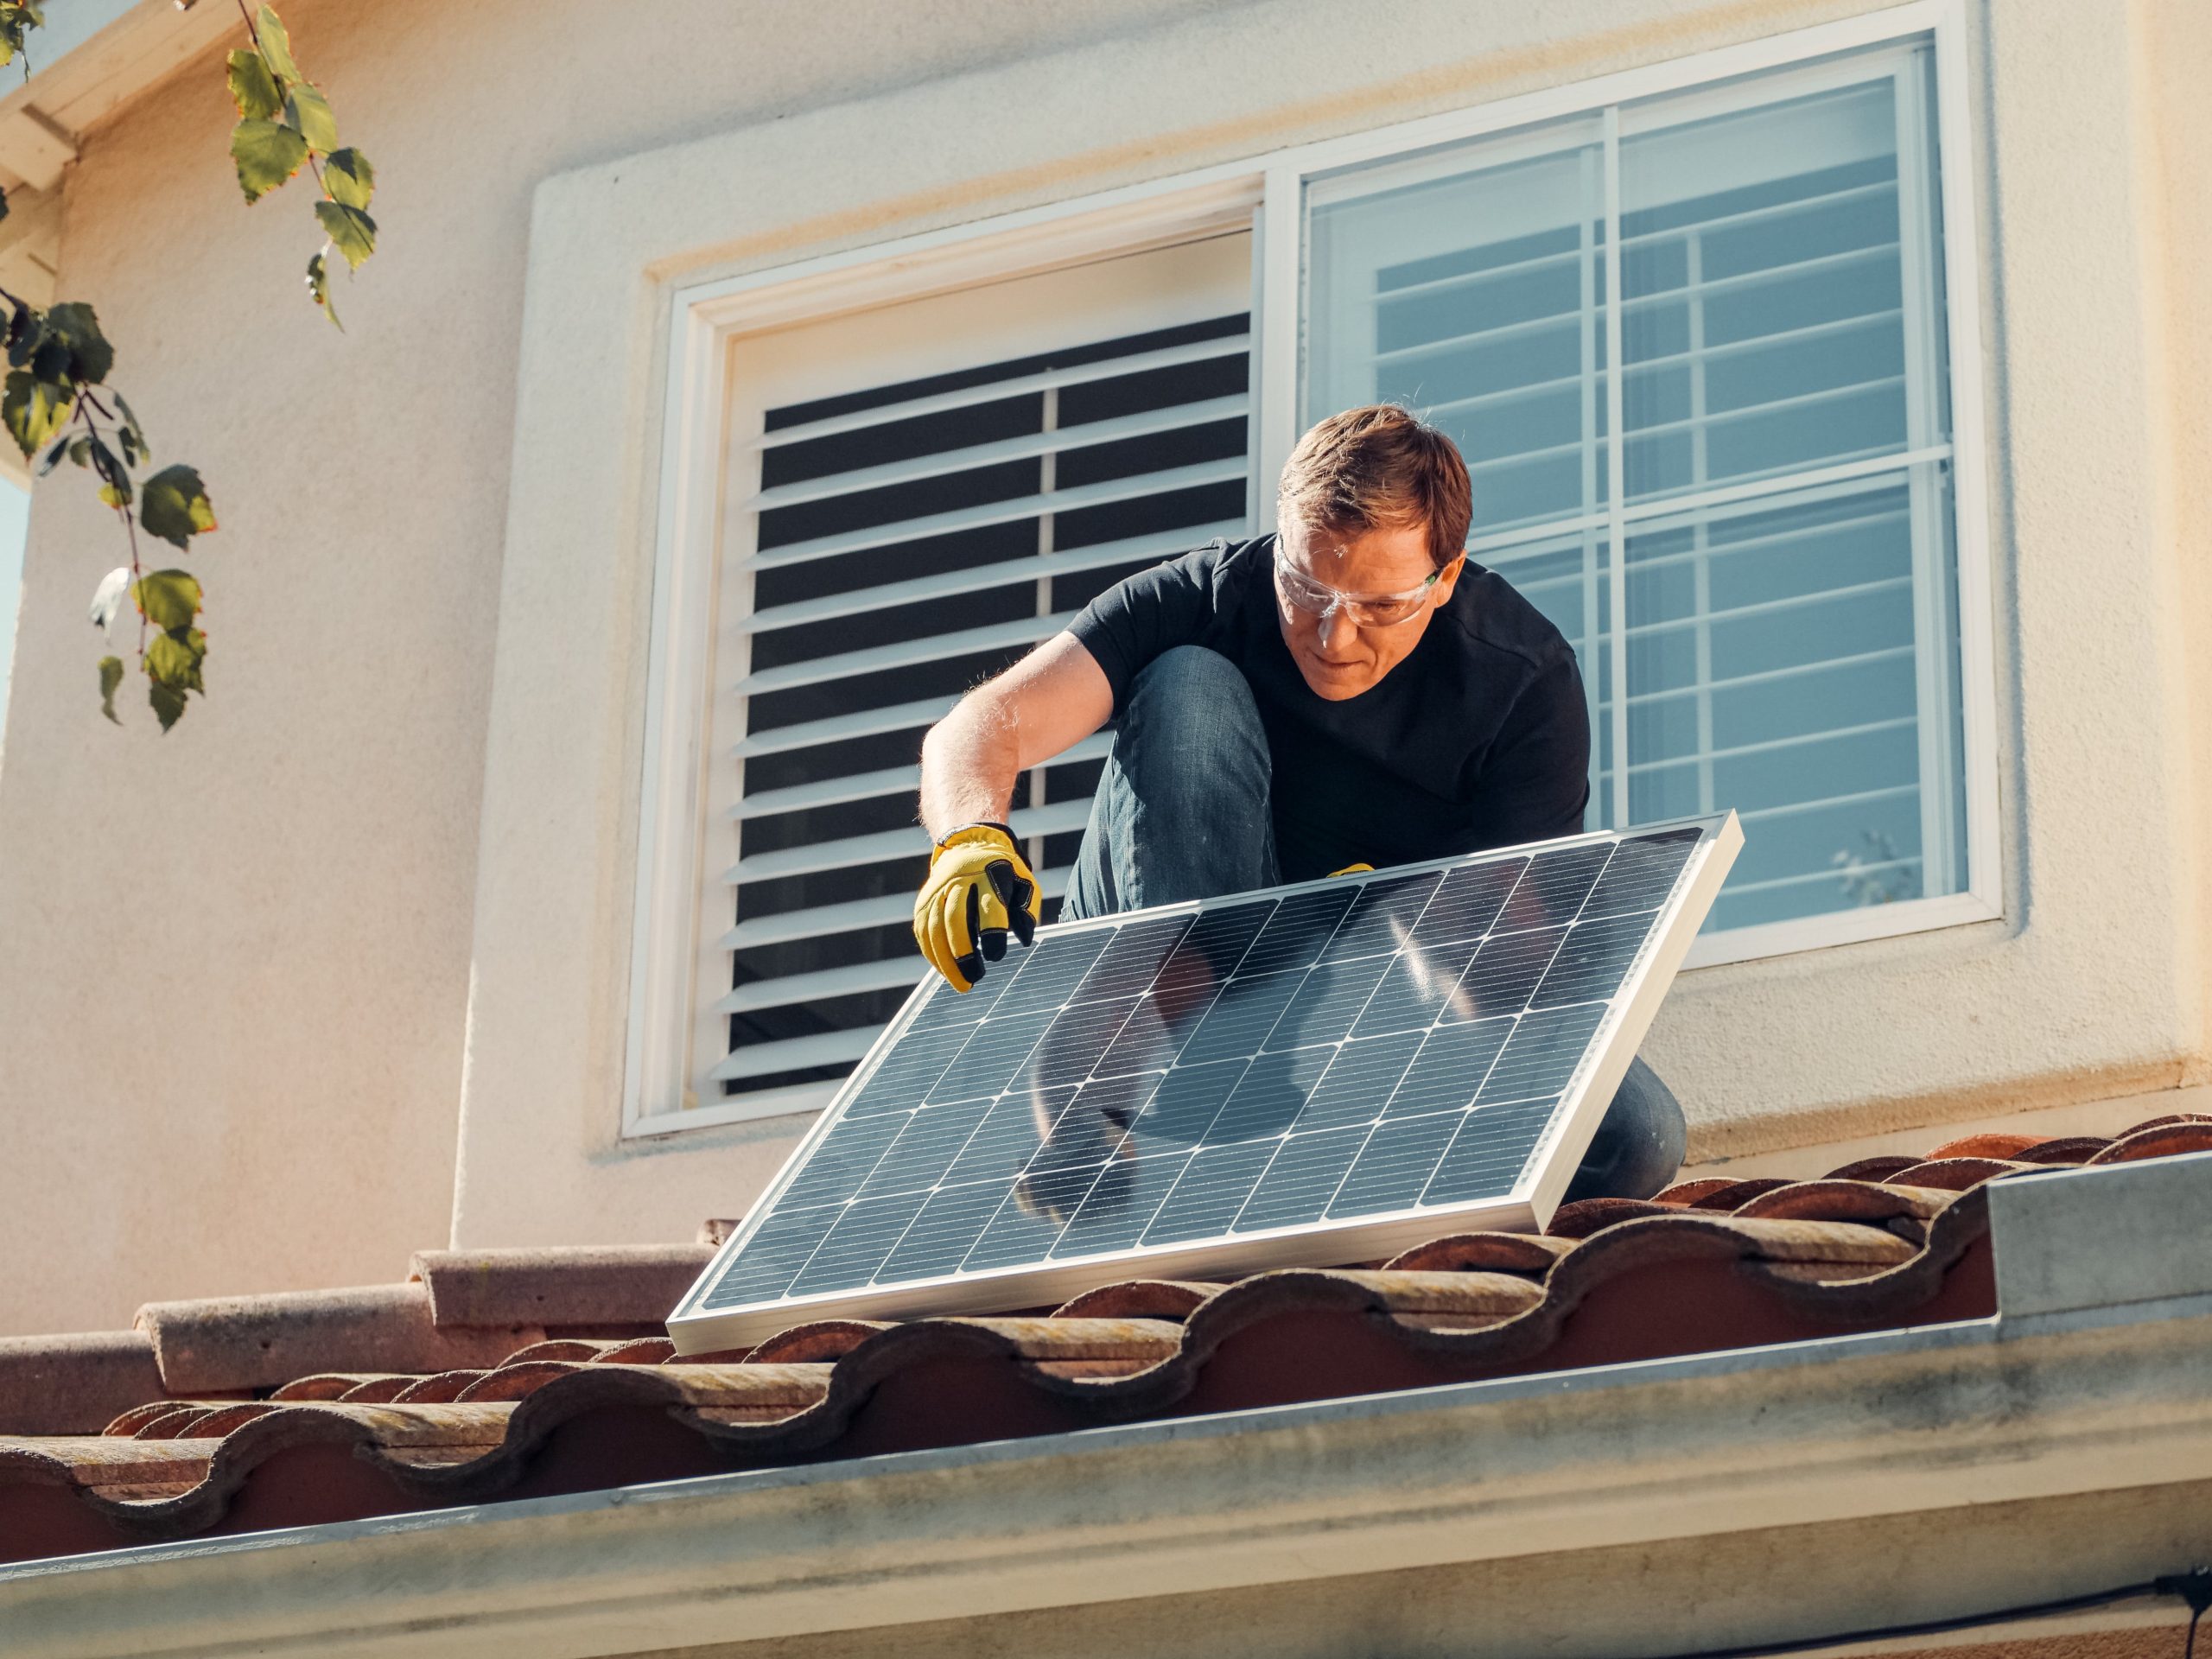 Zdjęcie przedstawia mężczyznę montującego panel fotowoltaiczny na dachu domu jednorodzinnego.